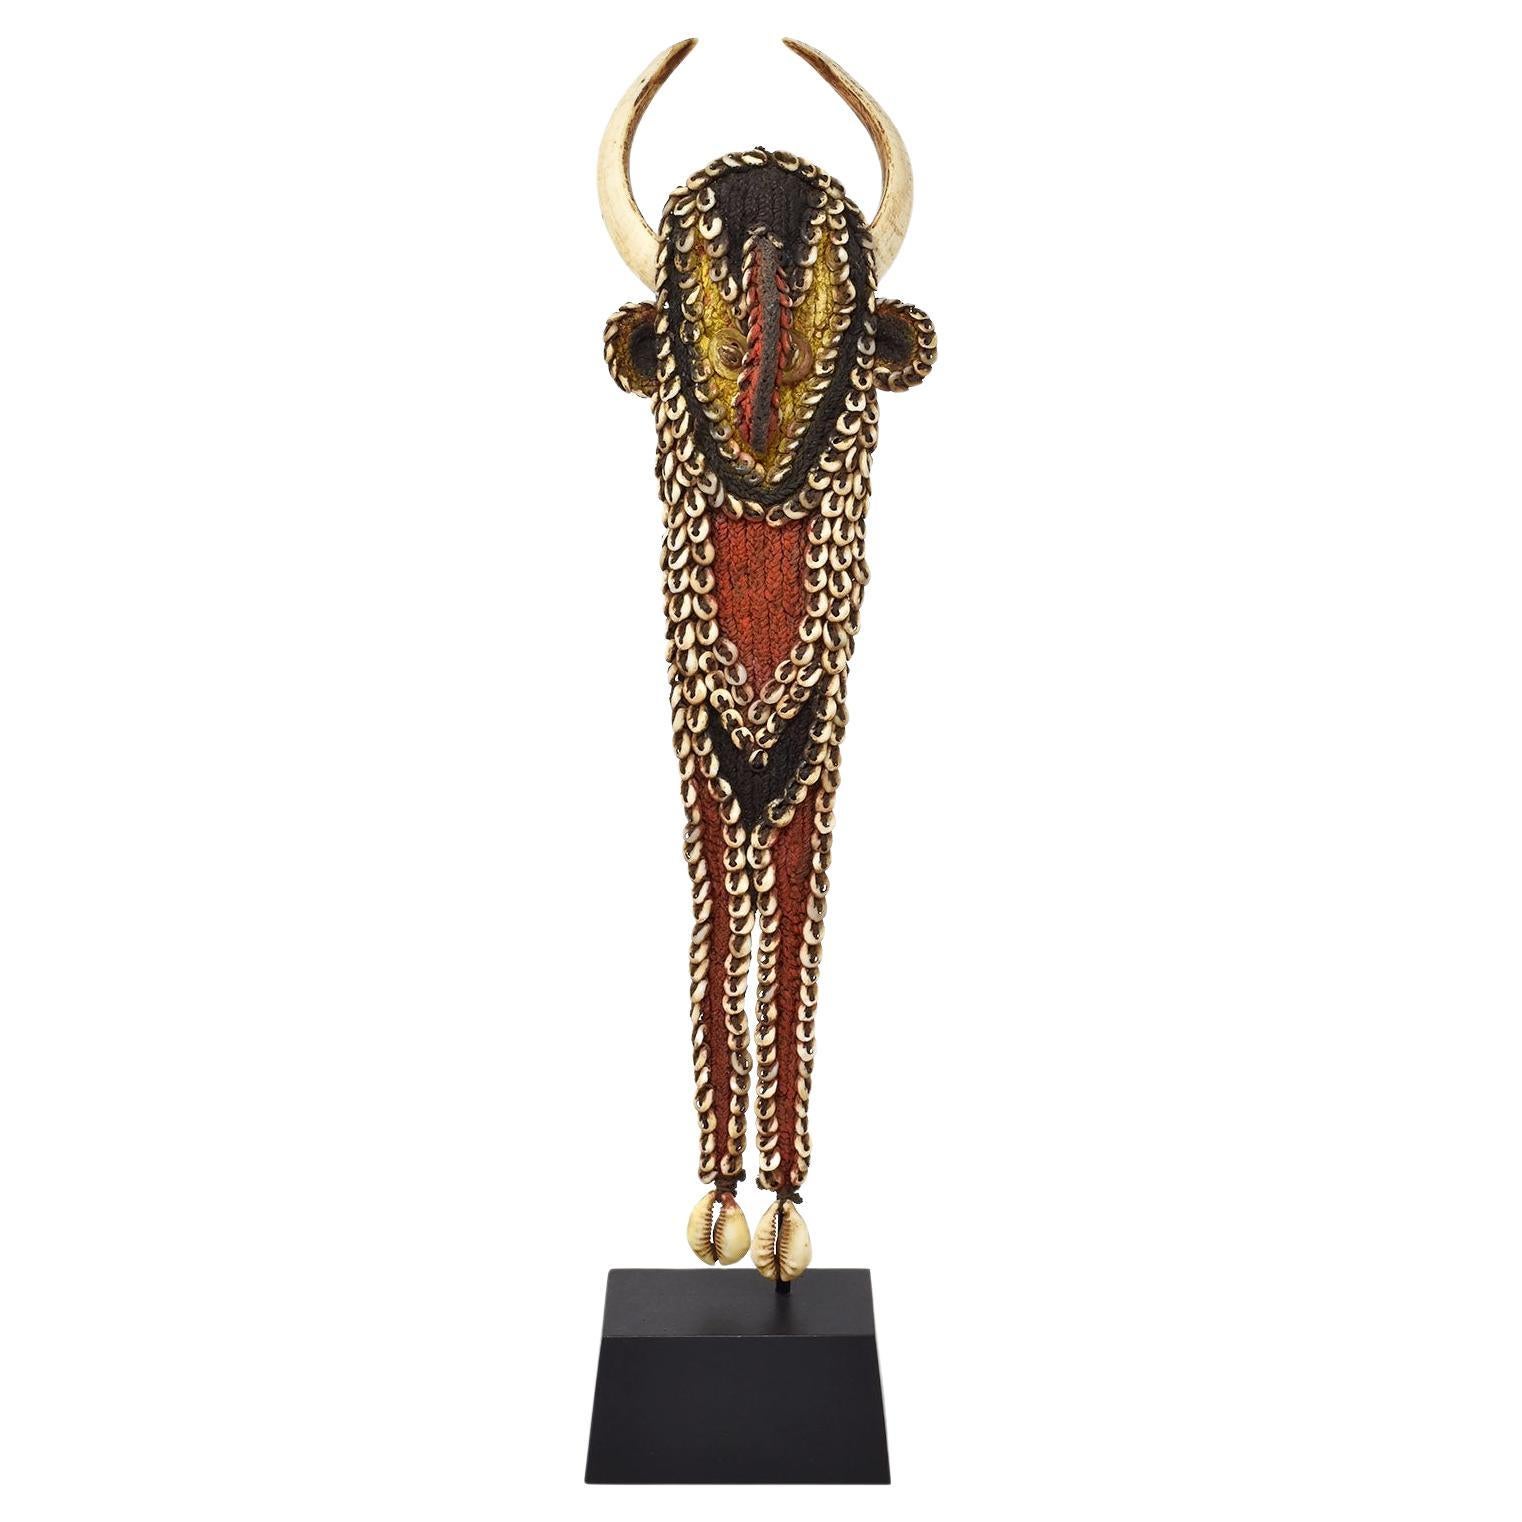 Karaut 'Pectoral' Ornament, Abelam Culture, Papua New Guinea